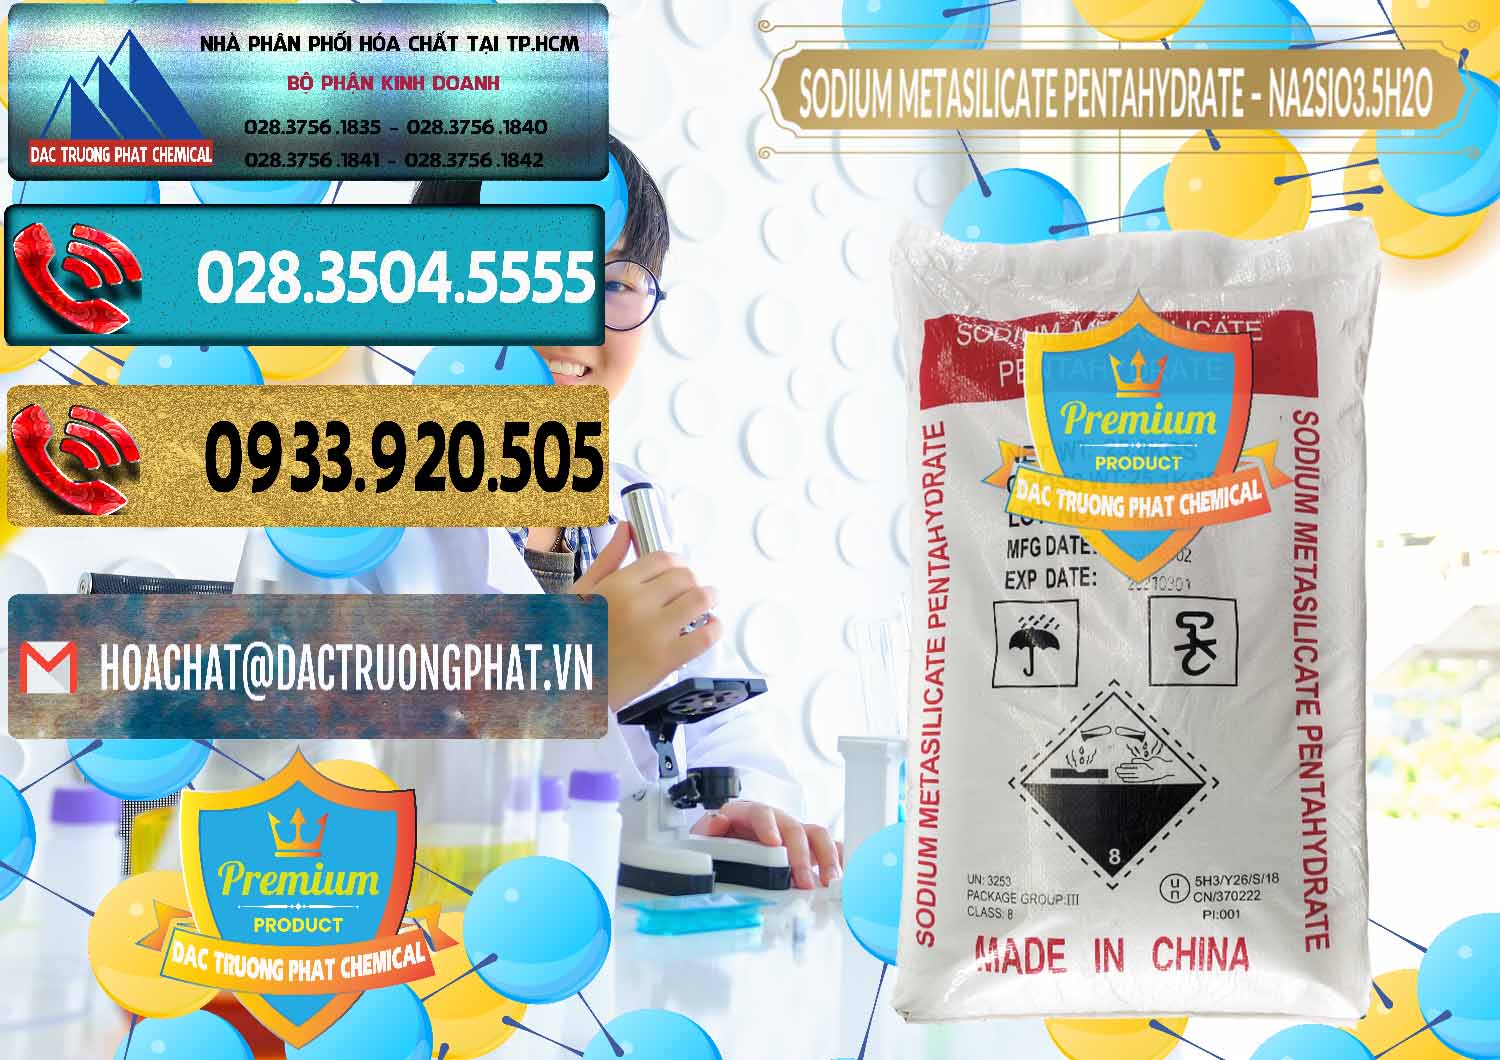 Phân phối - bán Sodium Metasilicate Pentahydrate – Silicate Bột Trung Quốc China - 0147 - Công ty bán - phân phối hóa chất tại TP.HCM - hoachatdetnhuom.com